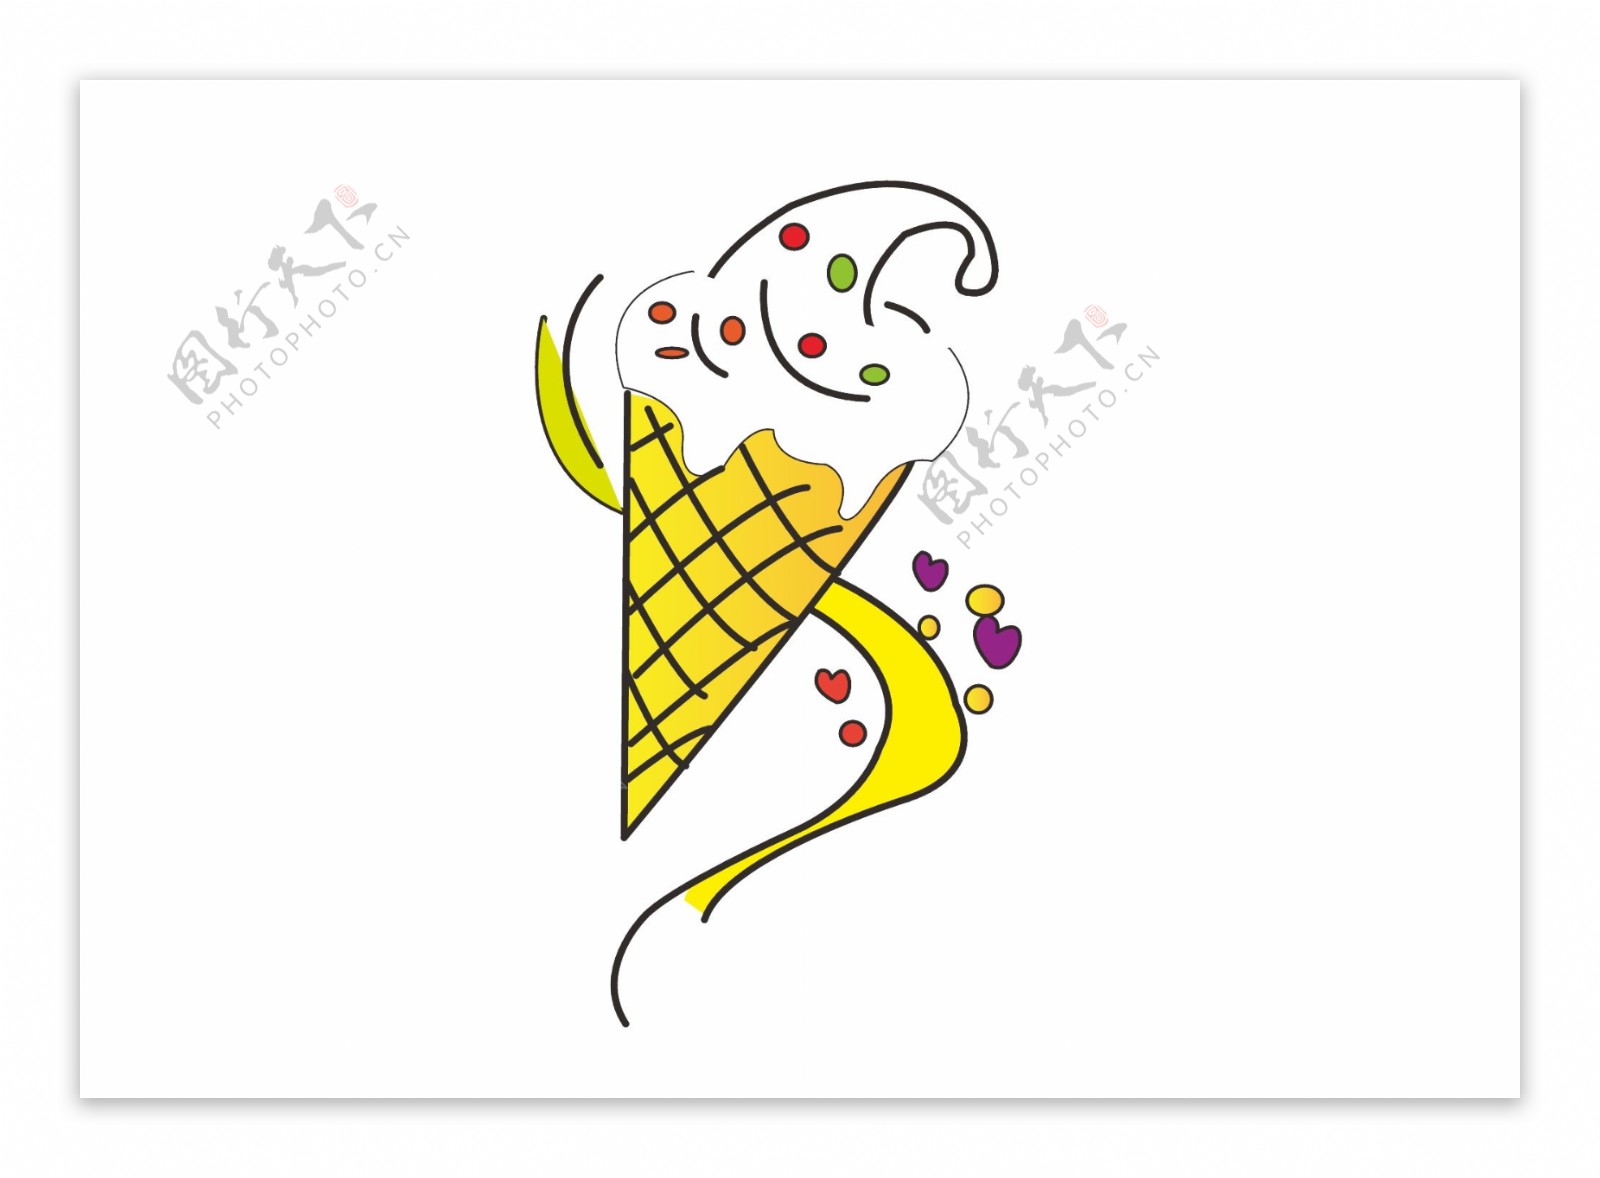 卡通矢量手绘冰淇淋